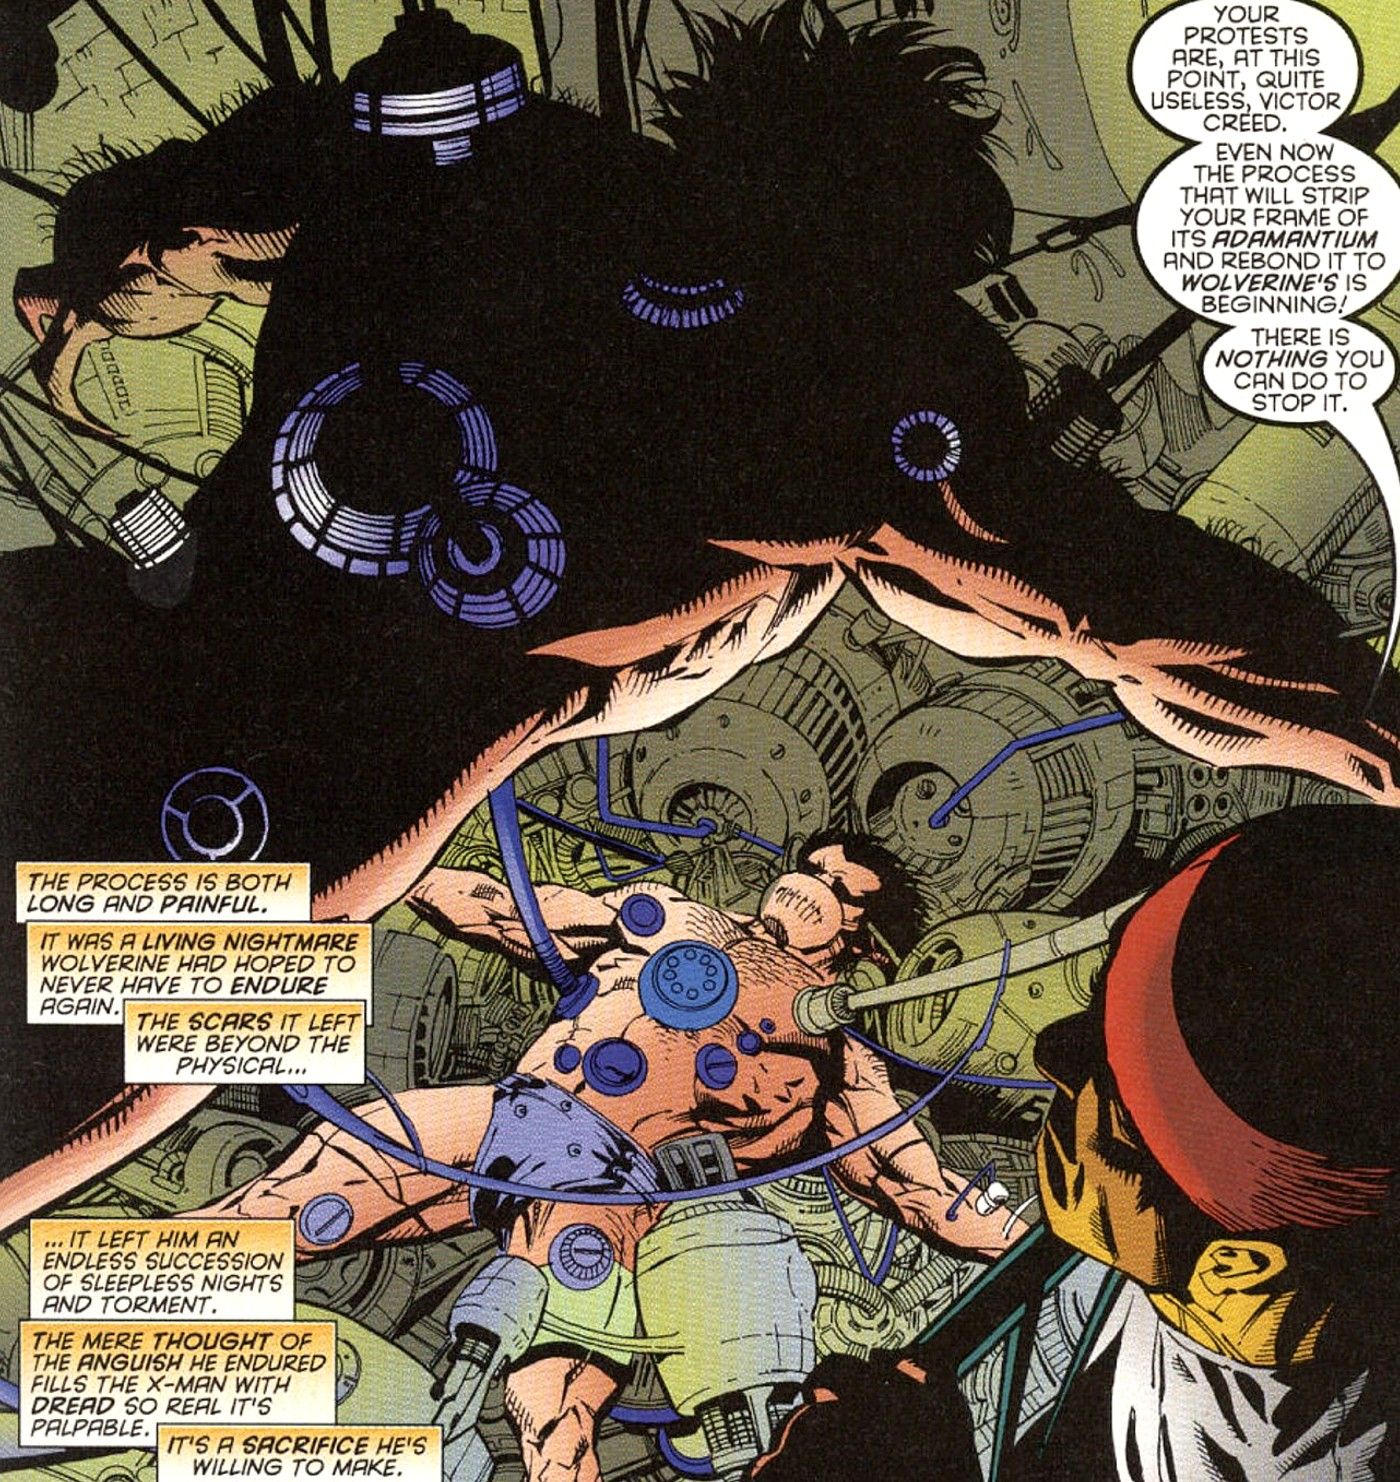 Wolverine-gets-back-his-adamantium